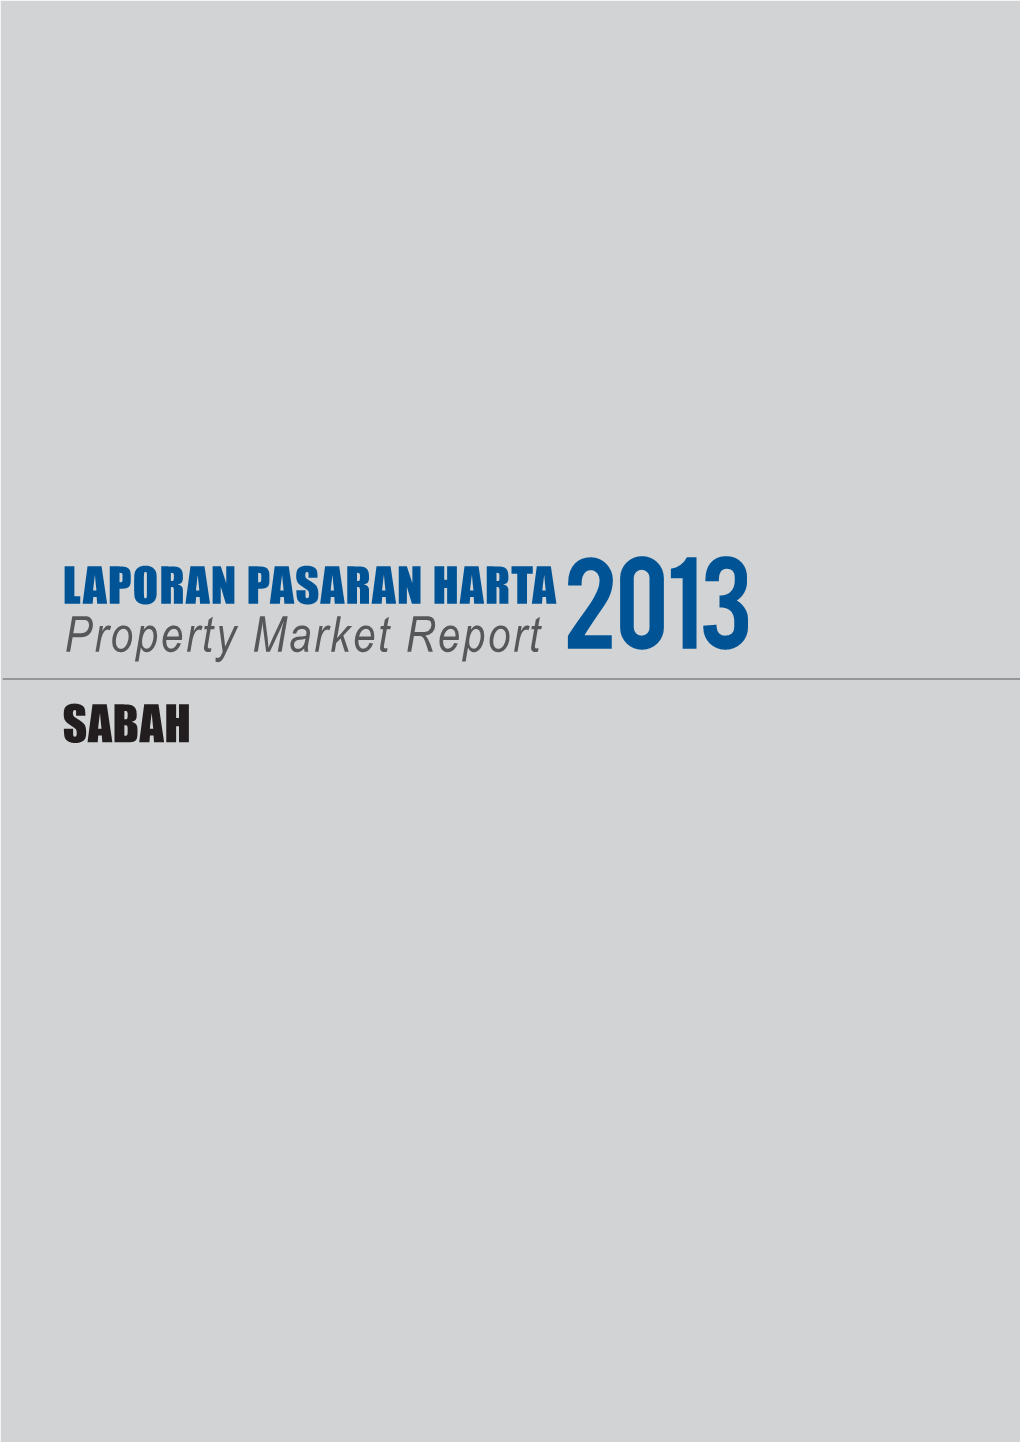 Property Market Report 2013 SABAH 15 SABAH